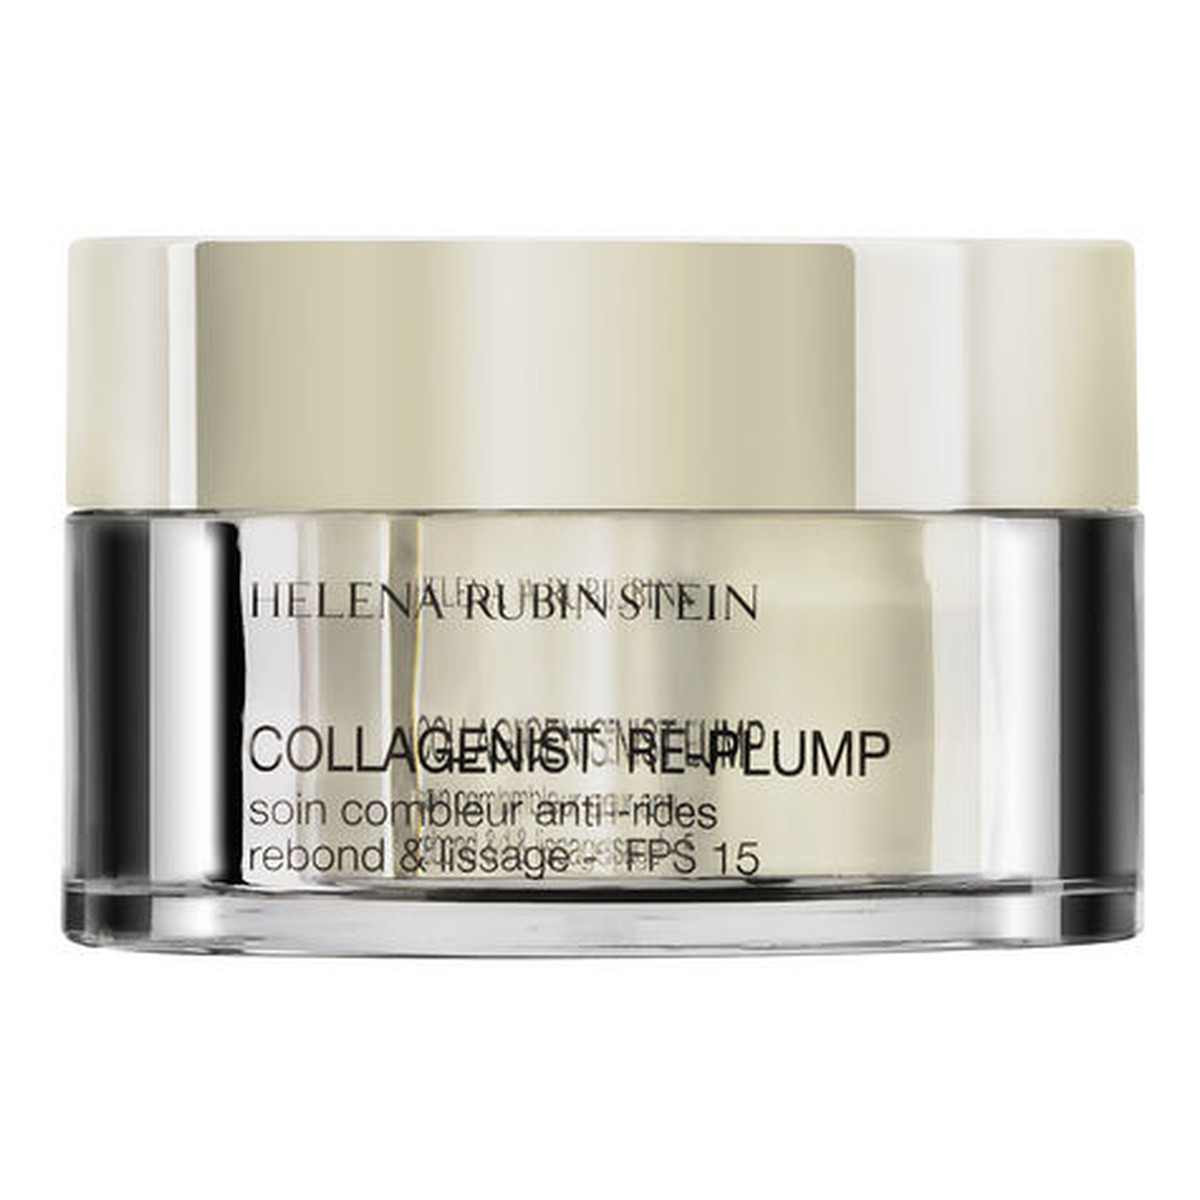 Helena Rubinstein Collagenist Re-Plump Anti-Wrinkle Filling Care Przeciwzmarszczkowy krem do twarzy na noc 50ml